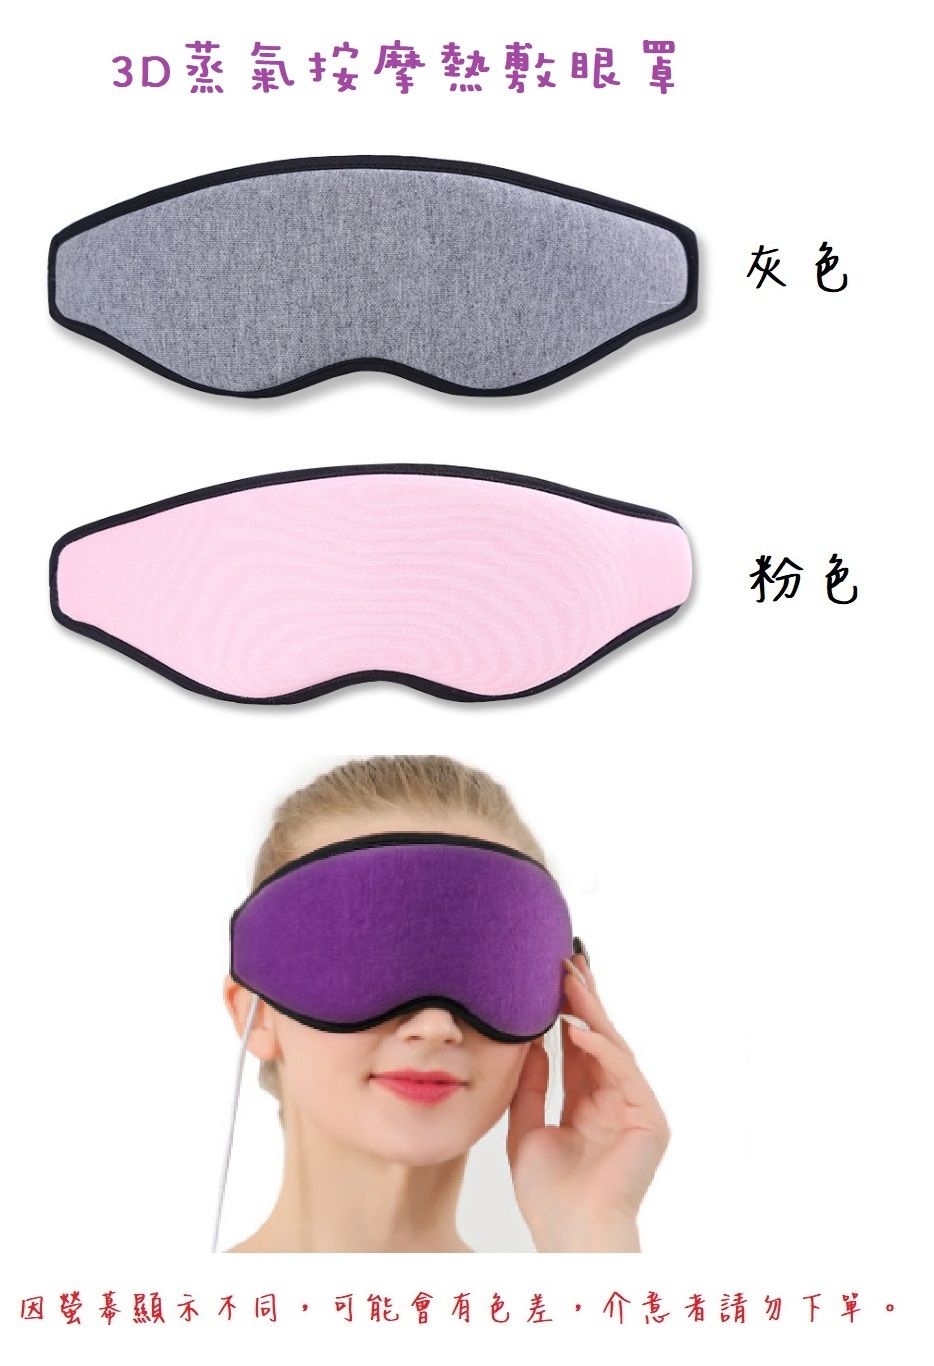 新款3D 蒸氣熱敷蒸氣重複使用熱敷眼罩 